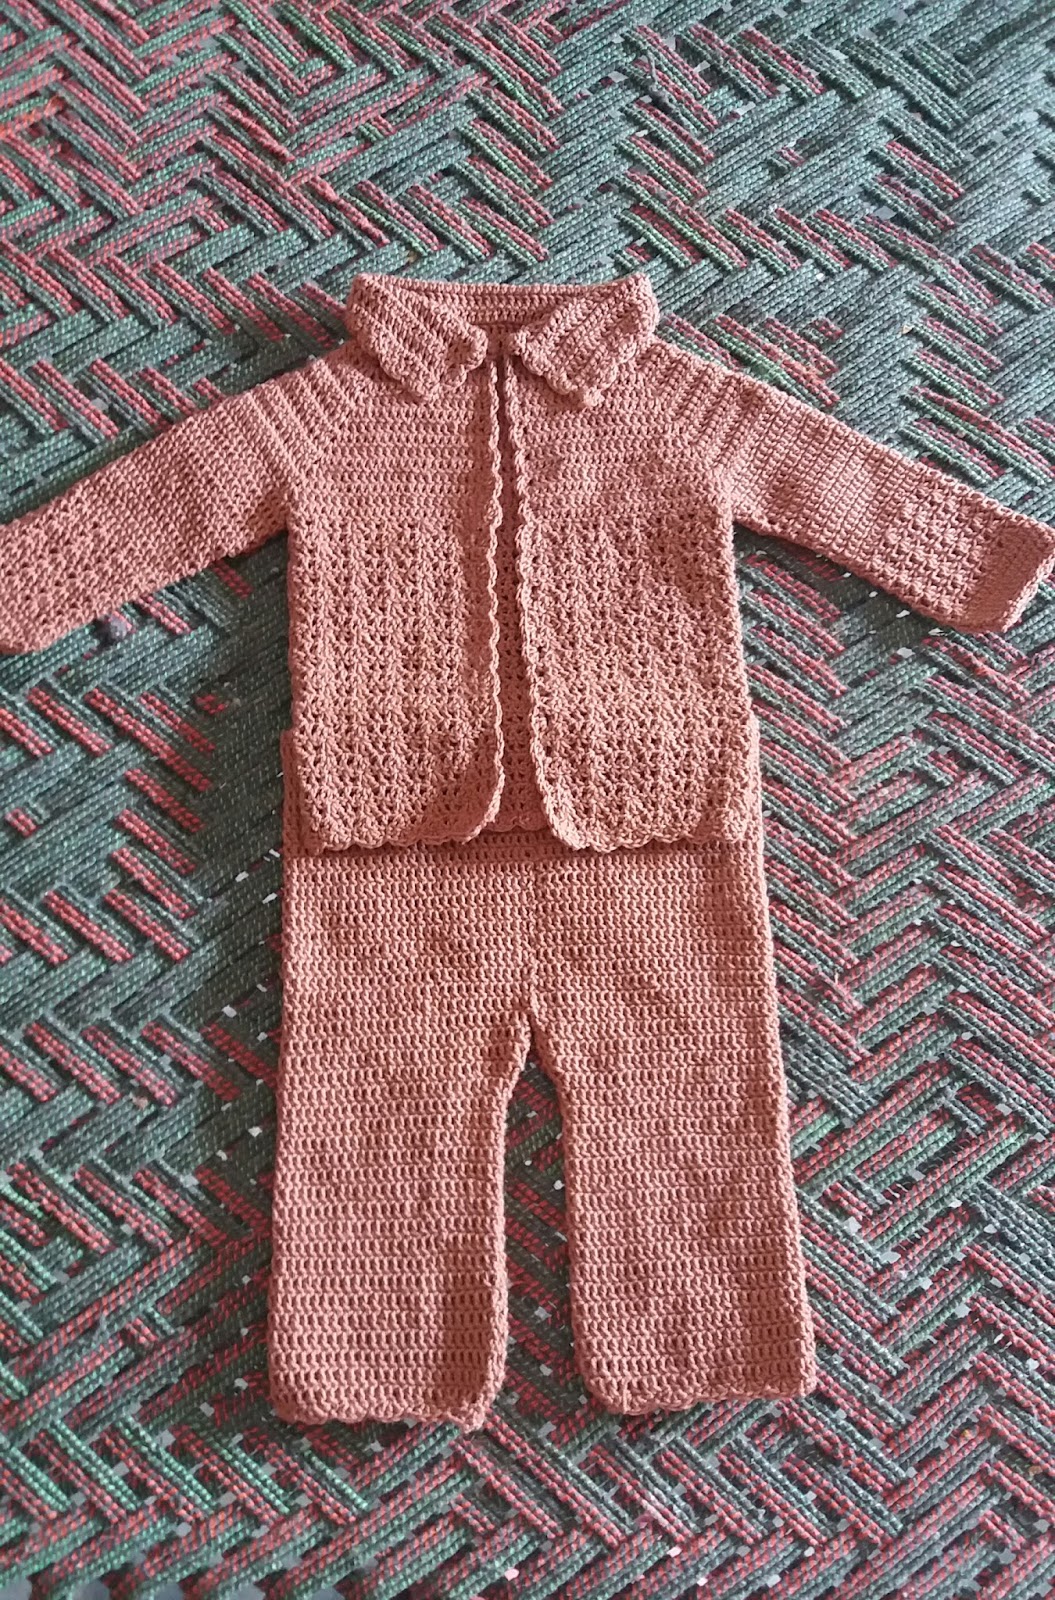 Crochet baby boy dress free pattern